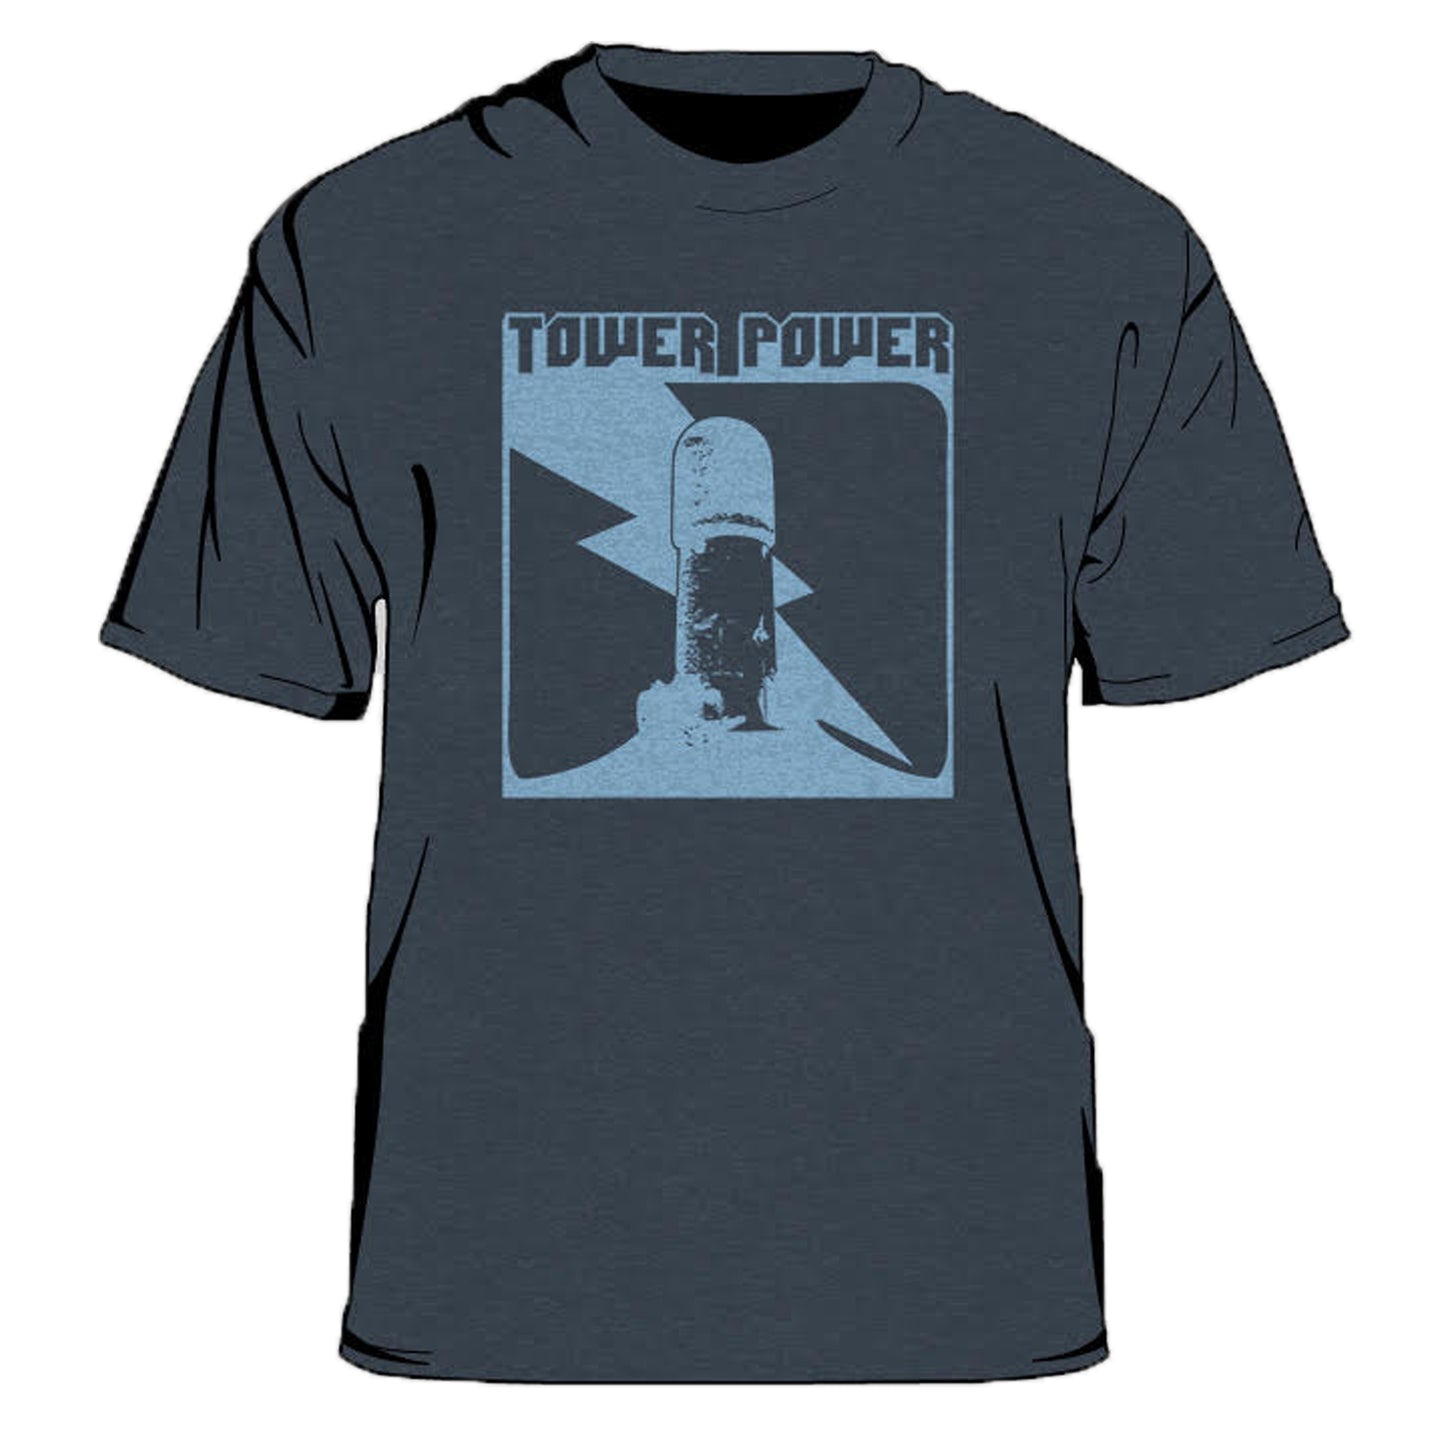 Tower Power Men's T-Shirt